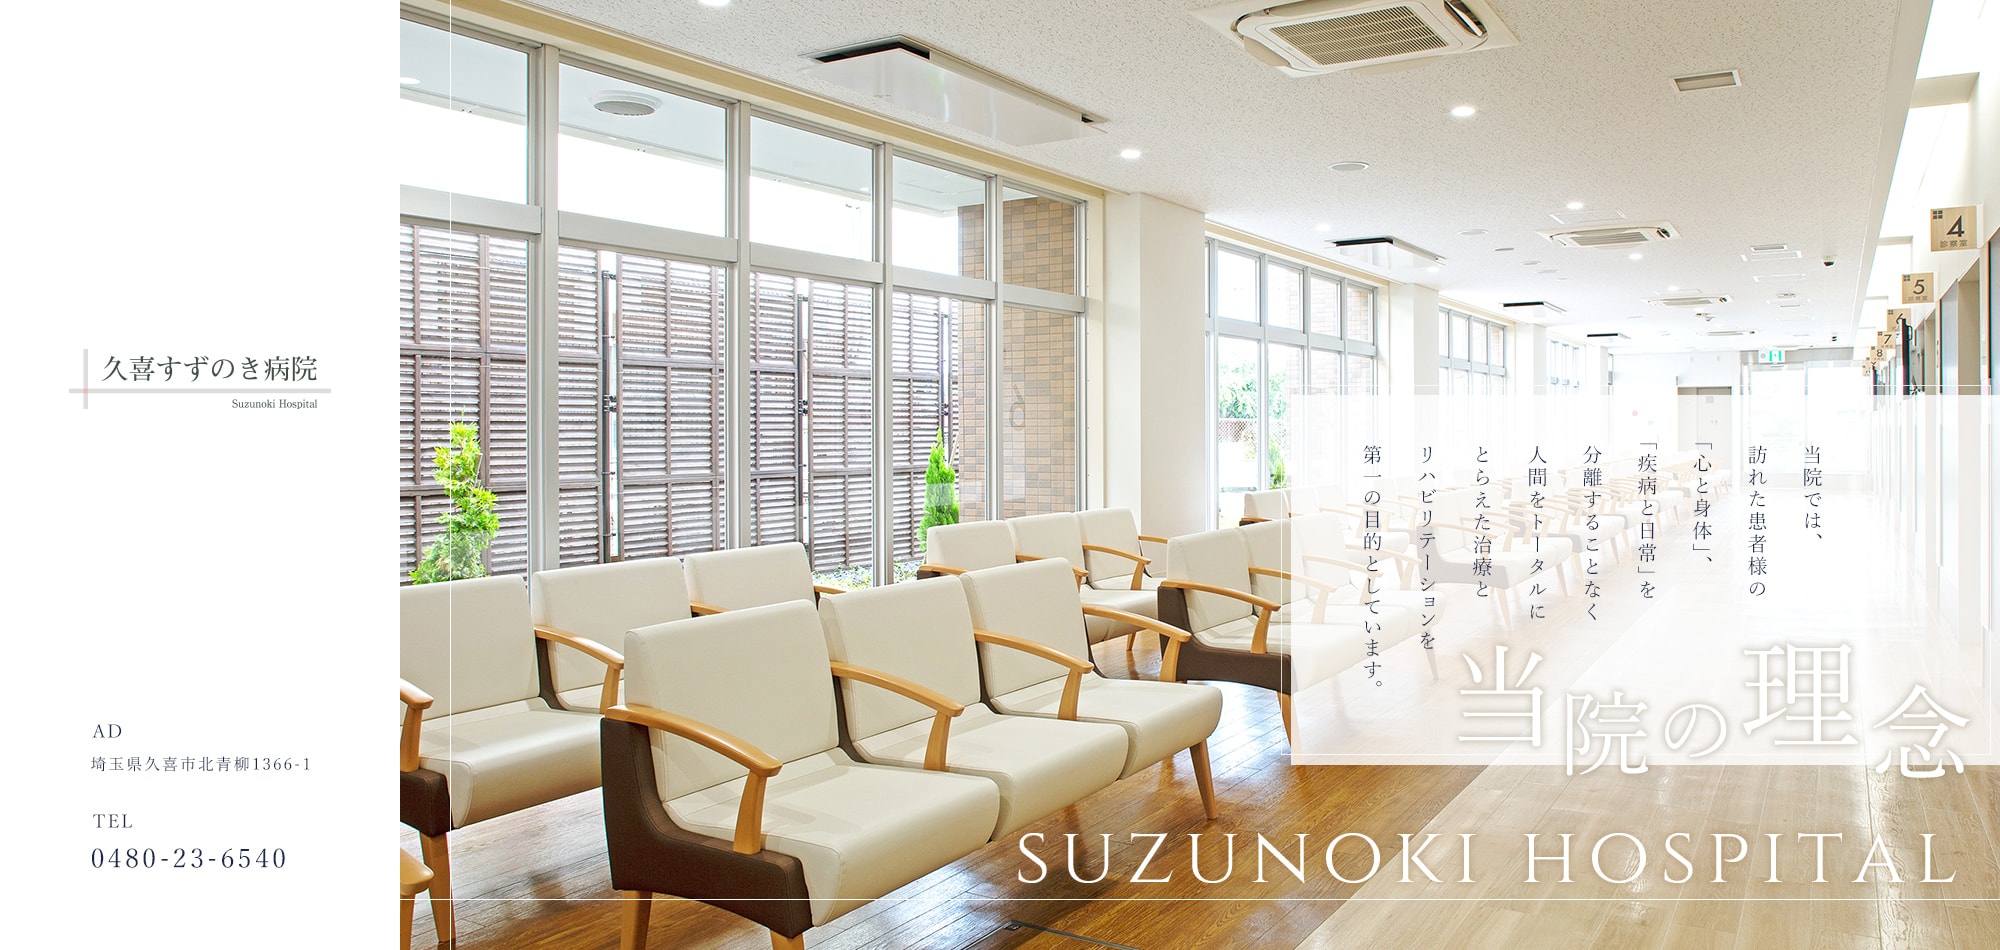 当院の理念 SUZUNOKI HOSPITAL